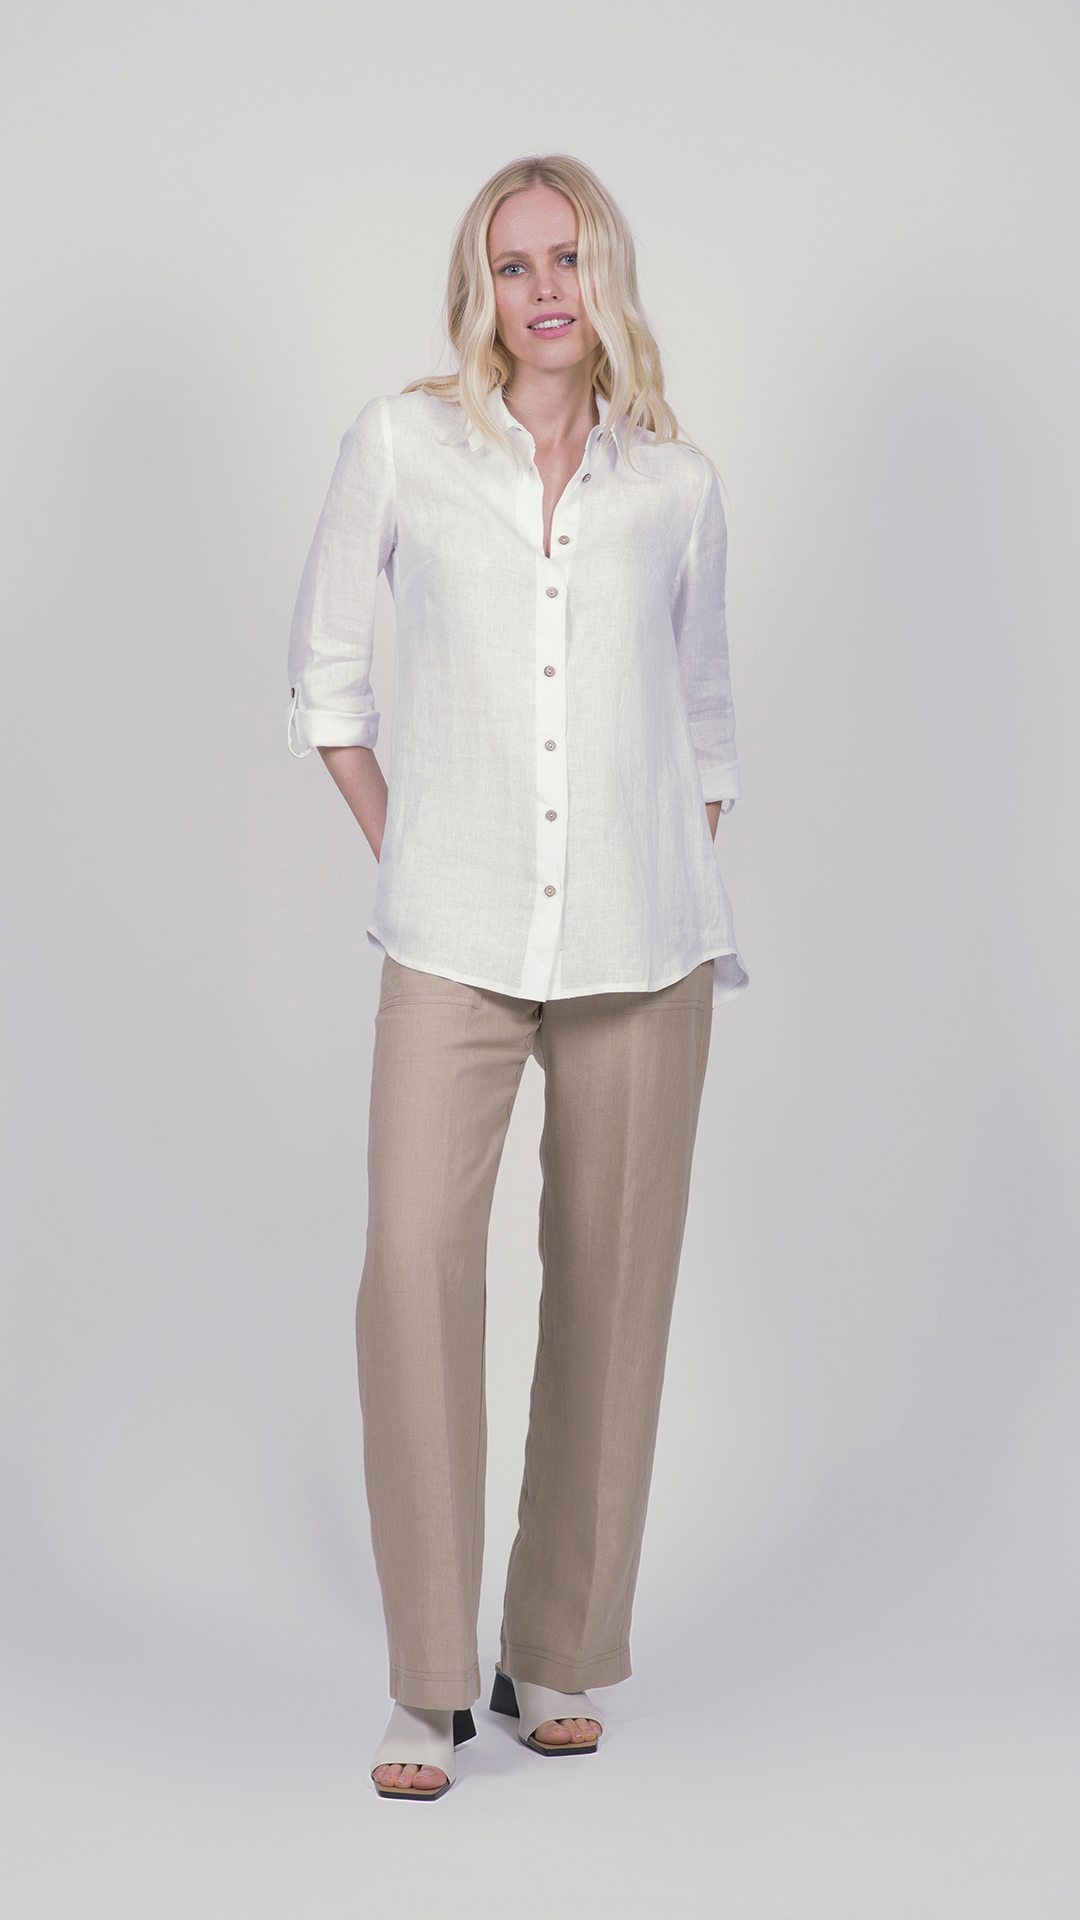 linoshirt01 bianco 1 1stAmerican camicia da donna manica tre quarti in 100% lino Made in Italy - camicia collo classico con bottoni e laccio laterale su maniche - puro lino